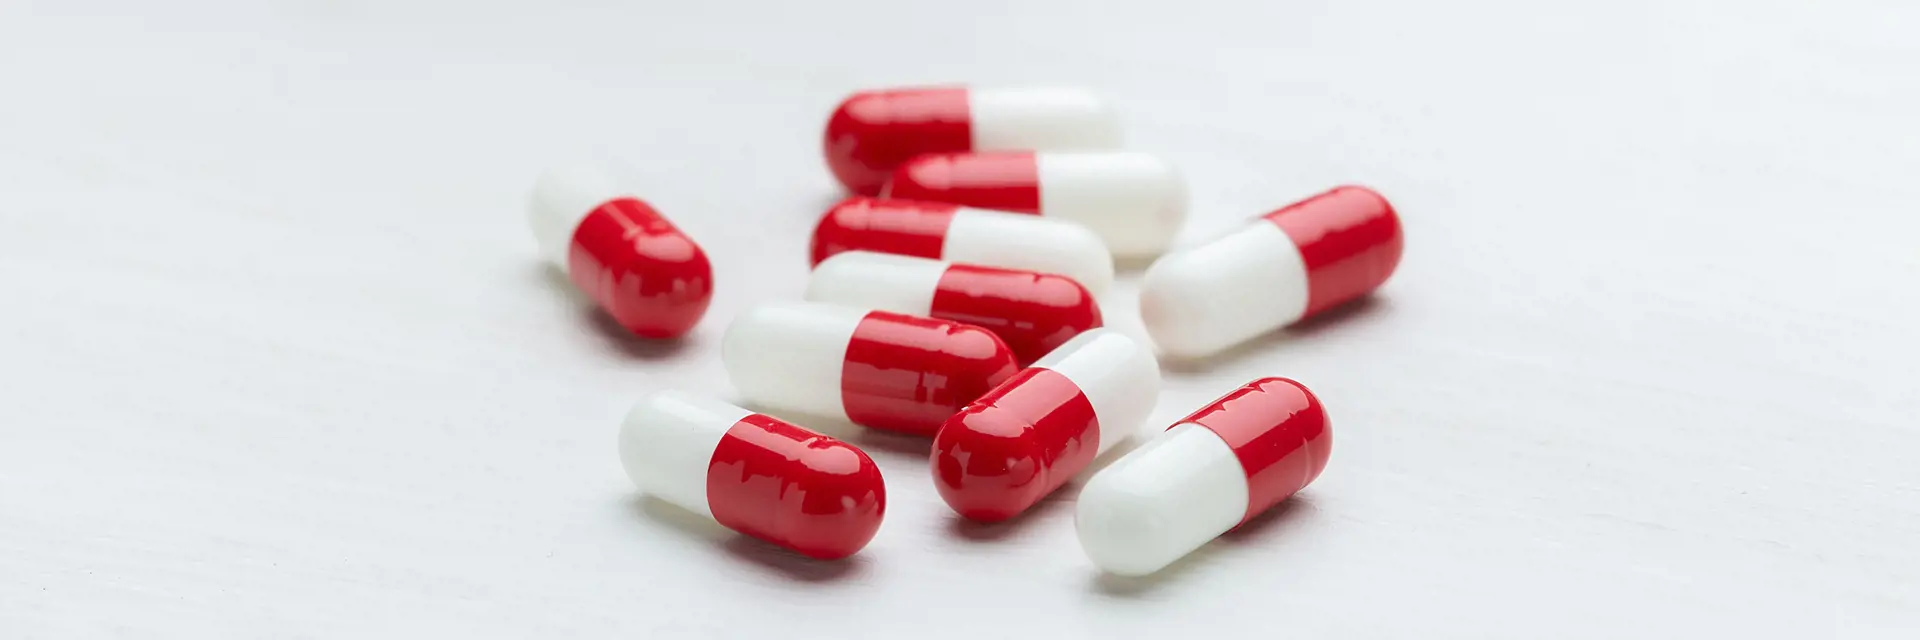 Rot-weiße Kapseln (Medikamente) auf weißem Hintergrund